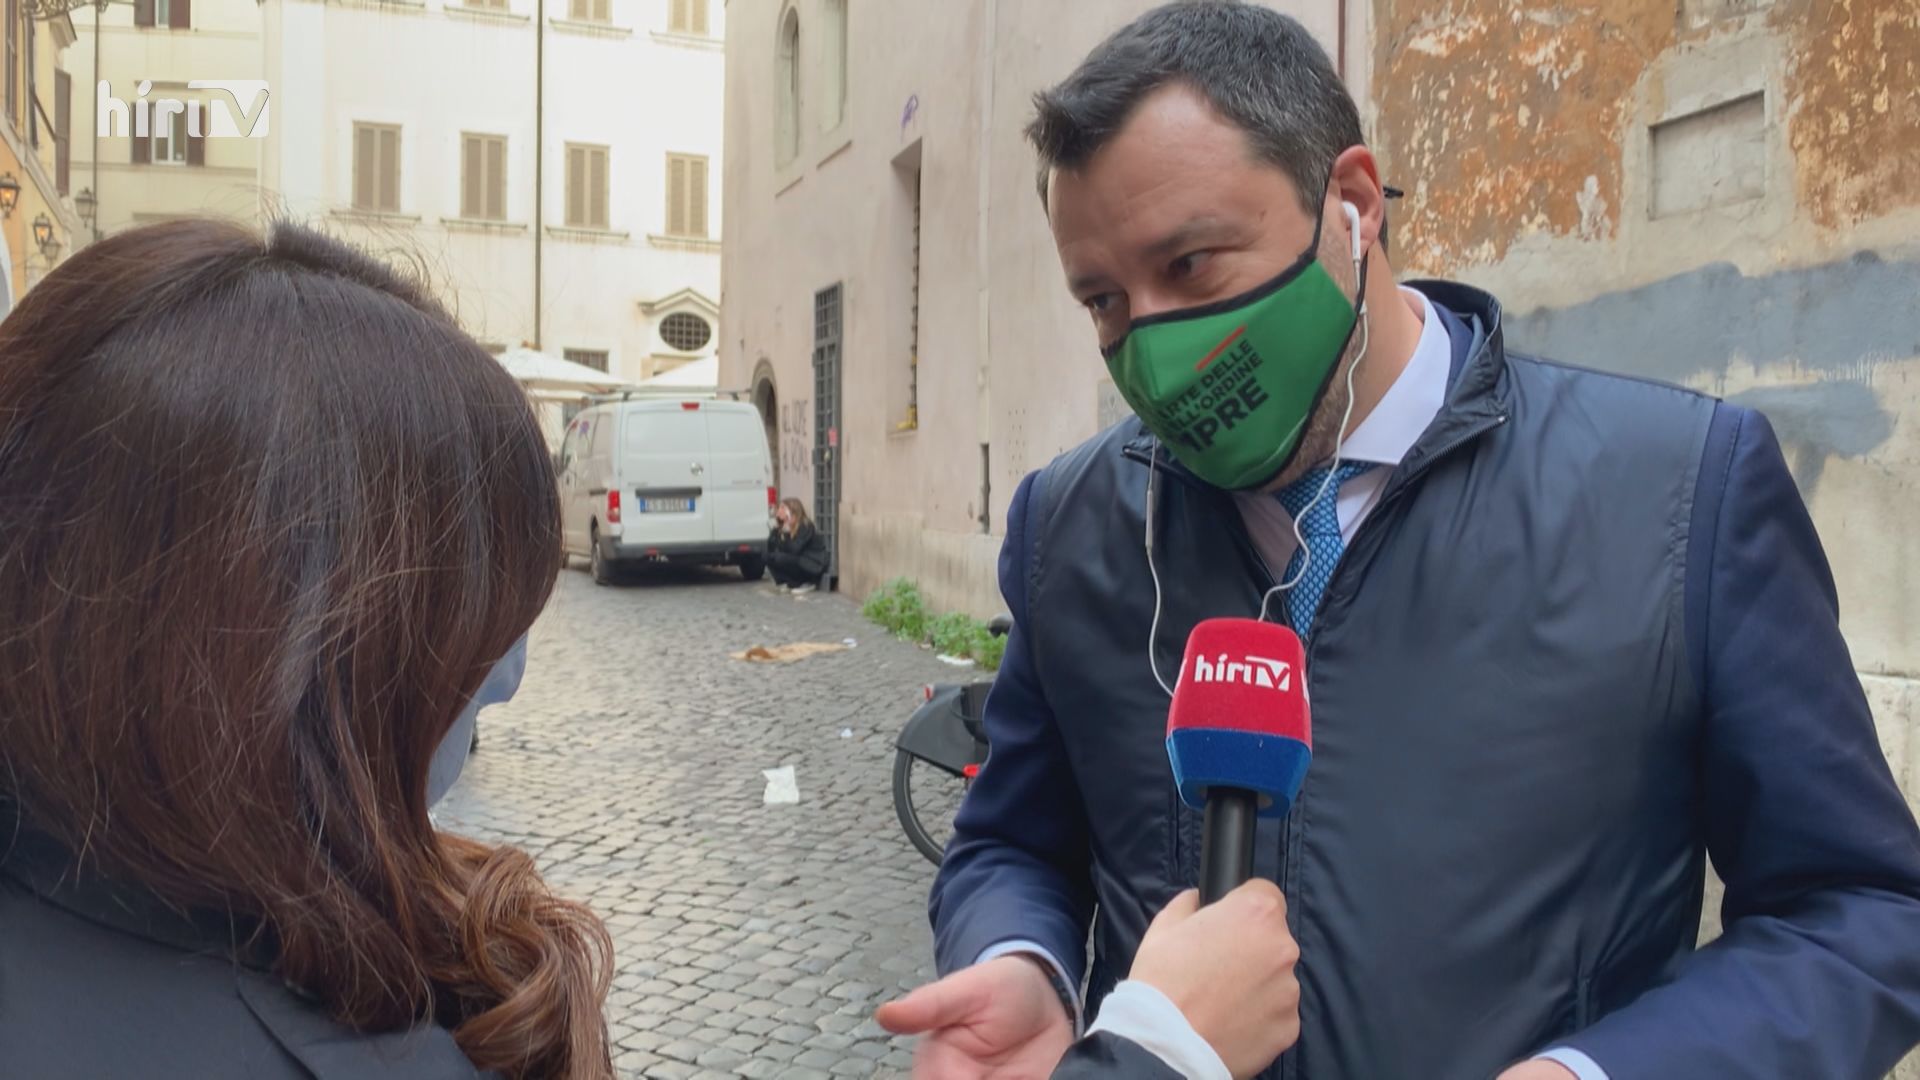 Salvini: Mindenkinek jogában áll ellenőrizni, ki lép be és ki országa területére